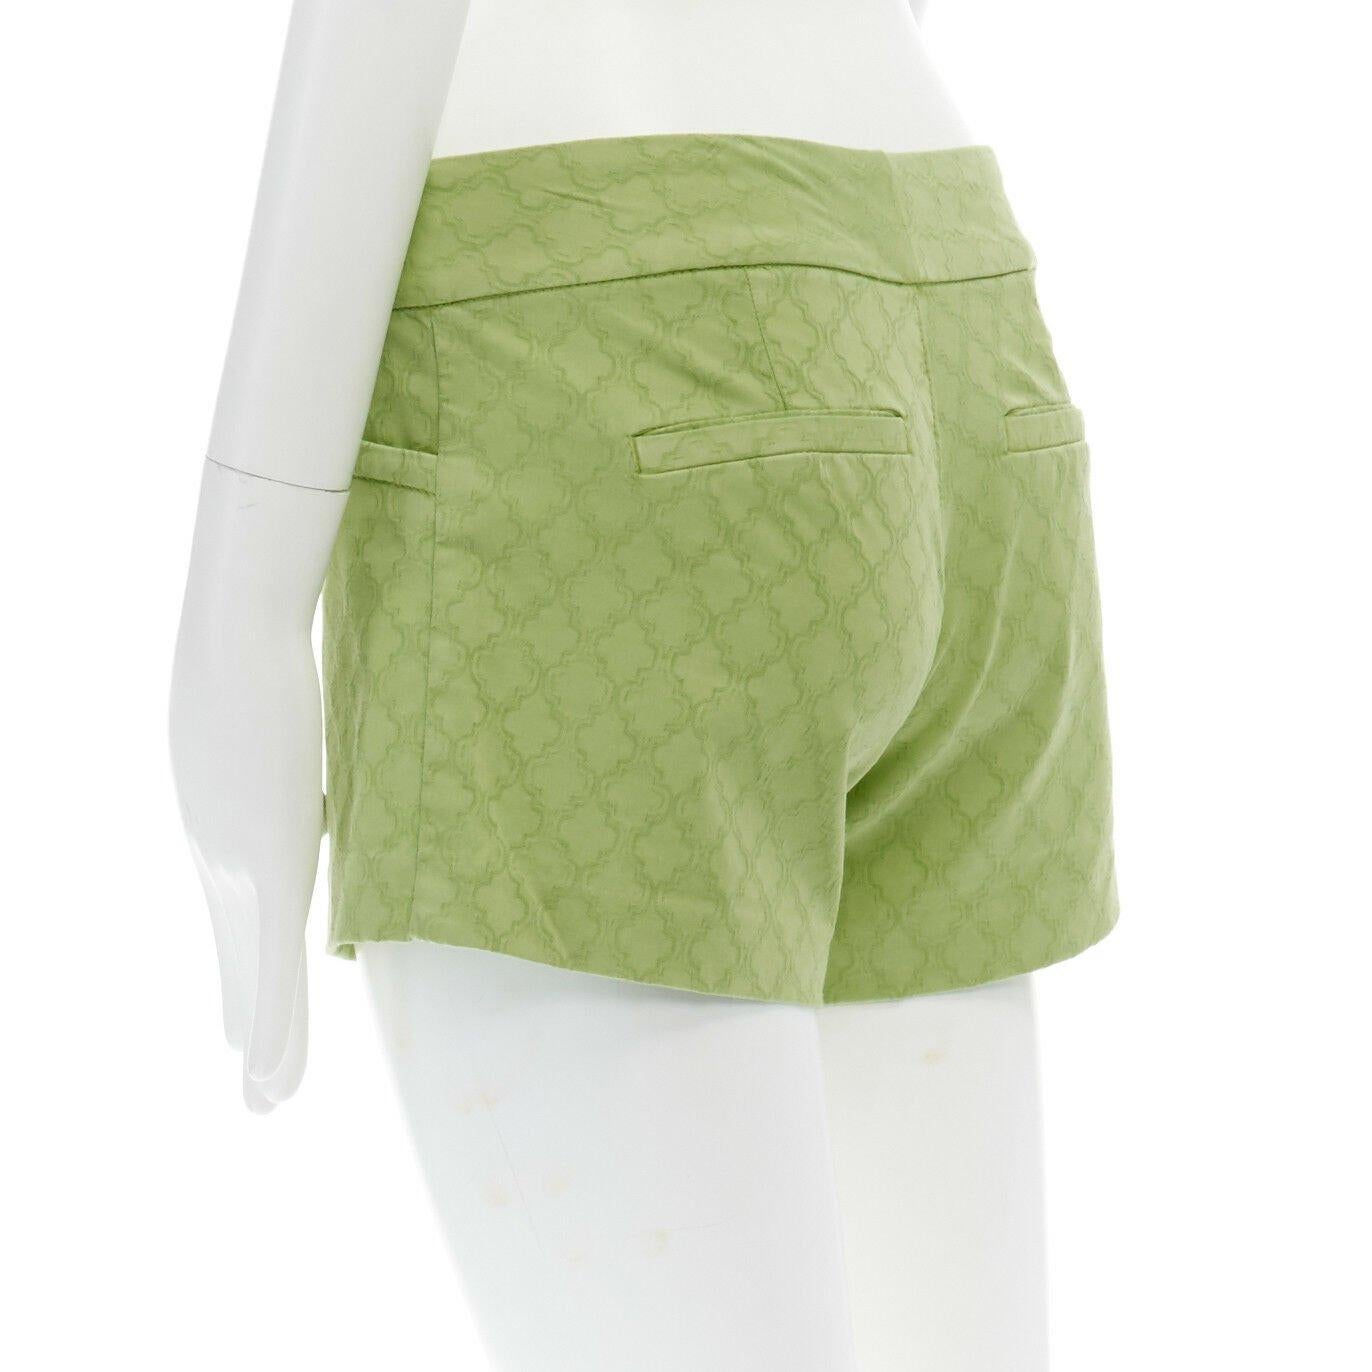 Beige LILLY PULITZER 100% cotton neon green textured cotton shorts US00 XXS